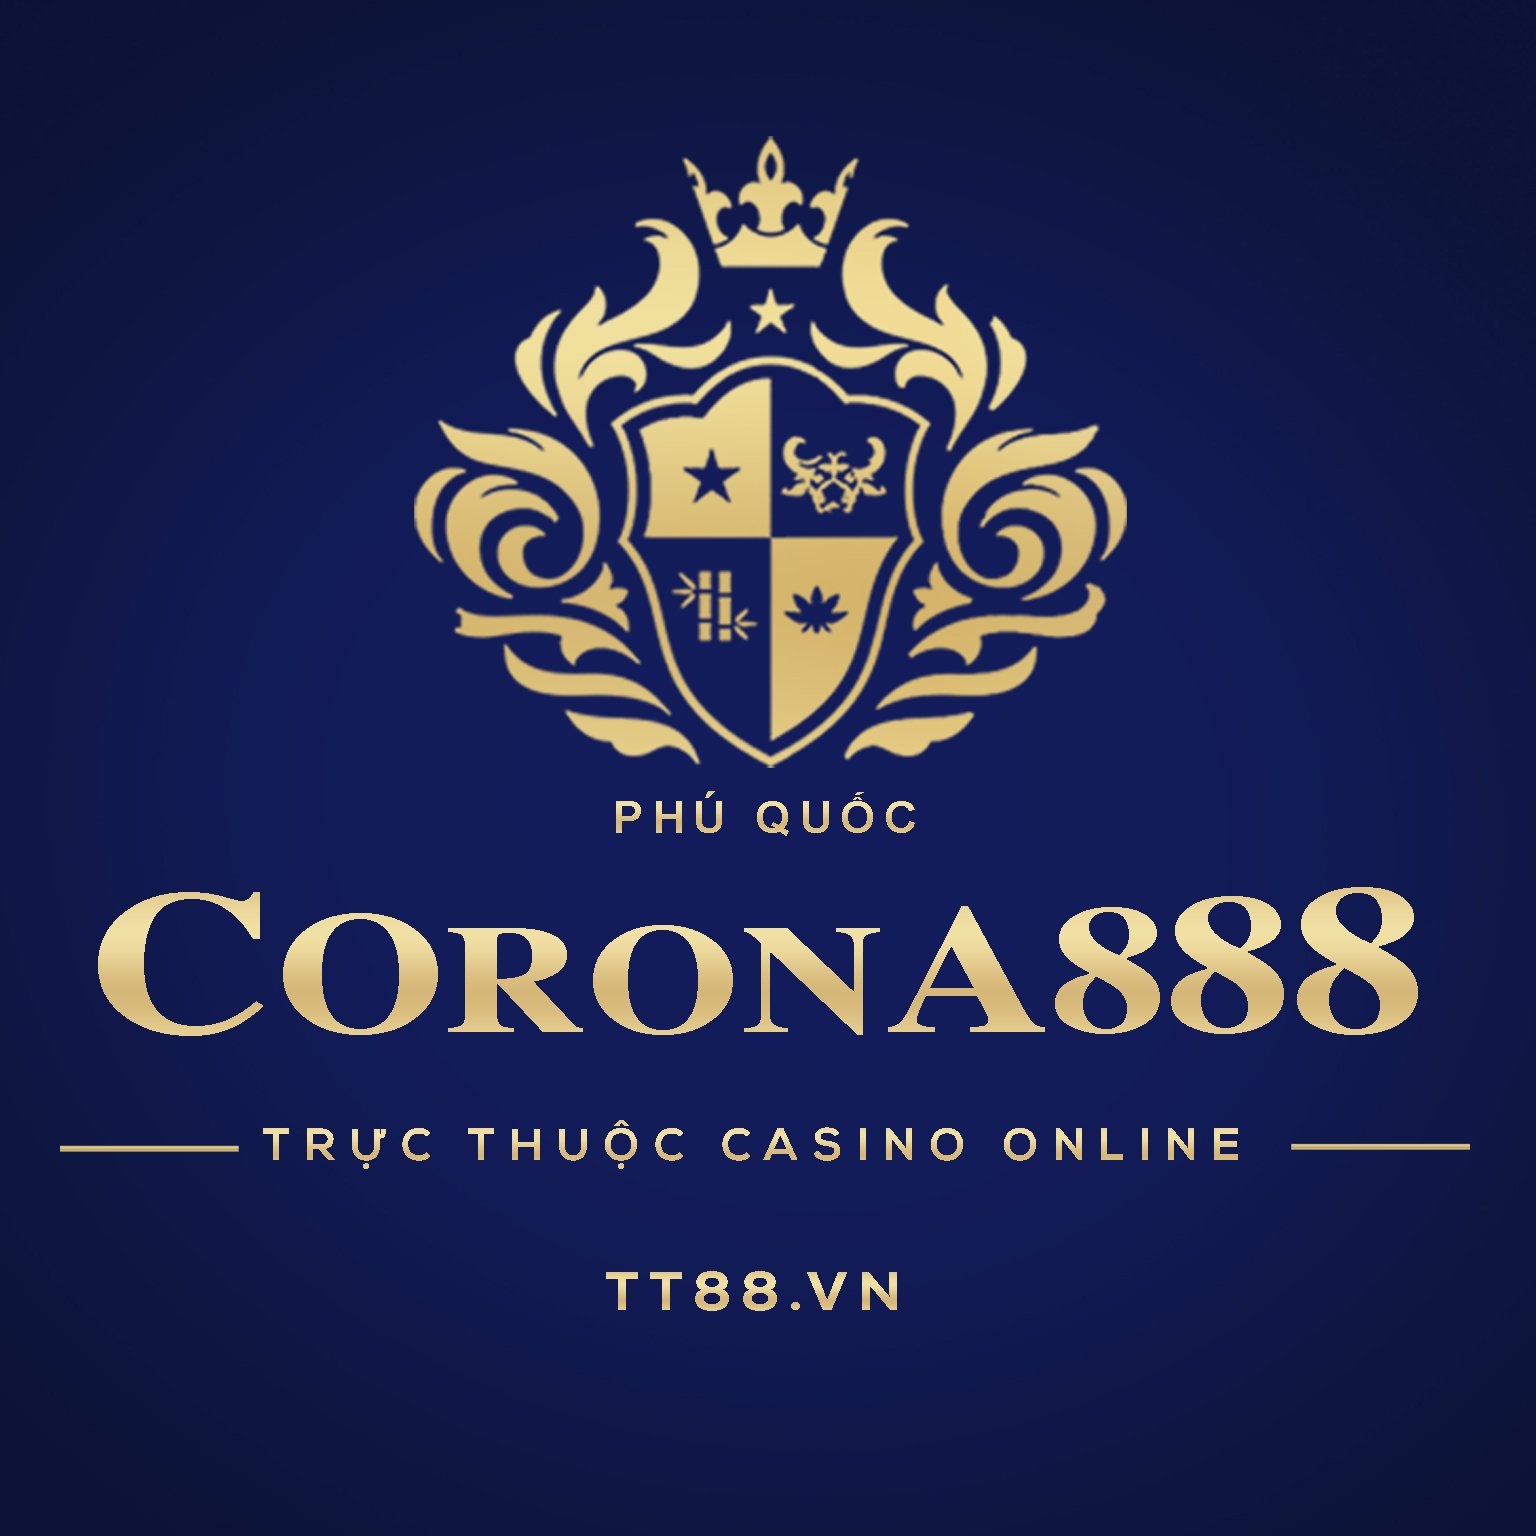 Corona888